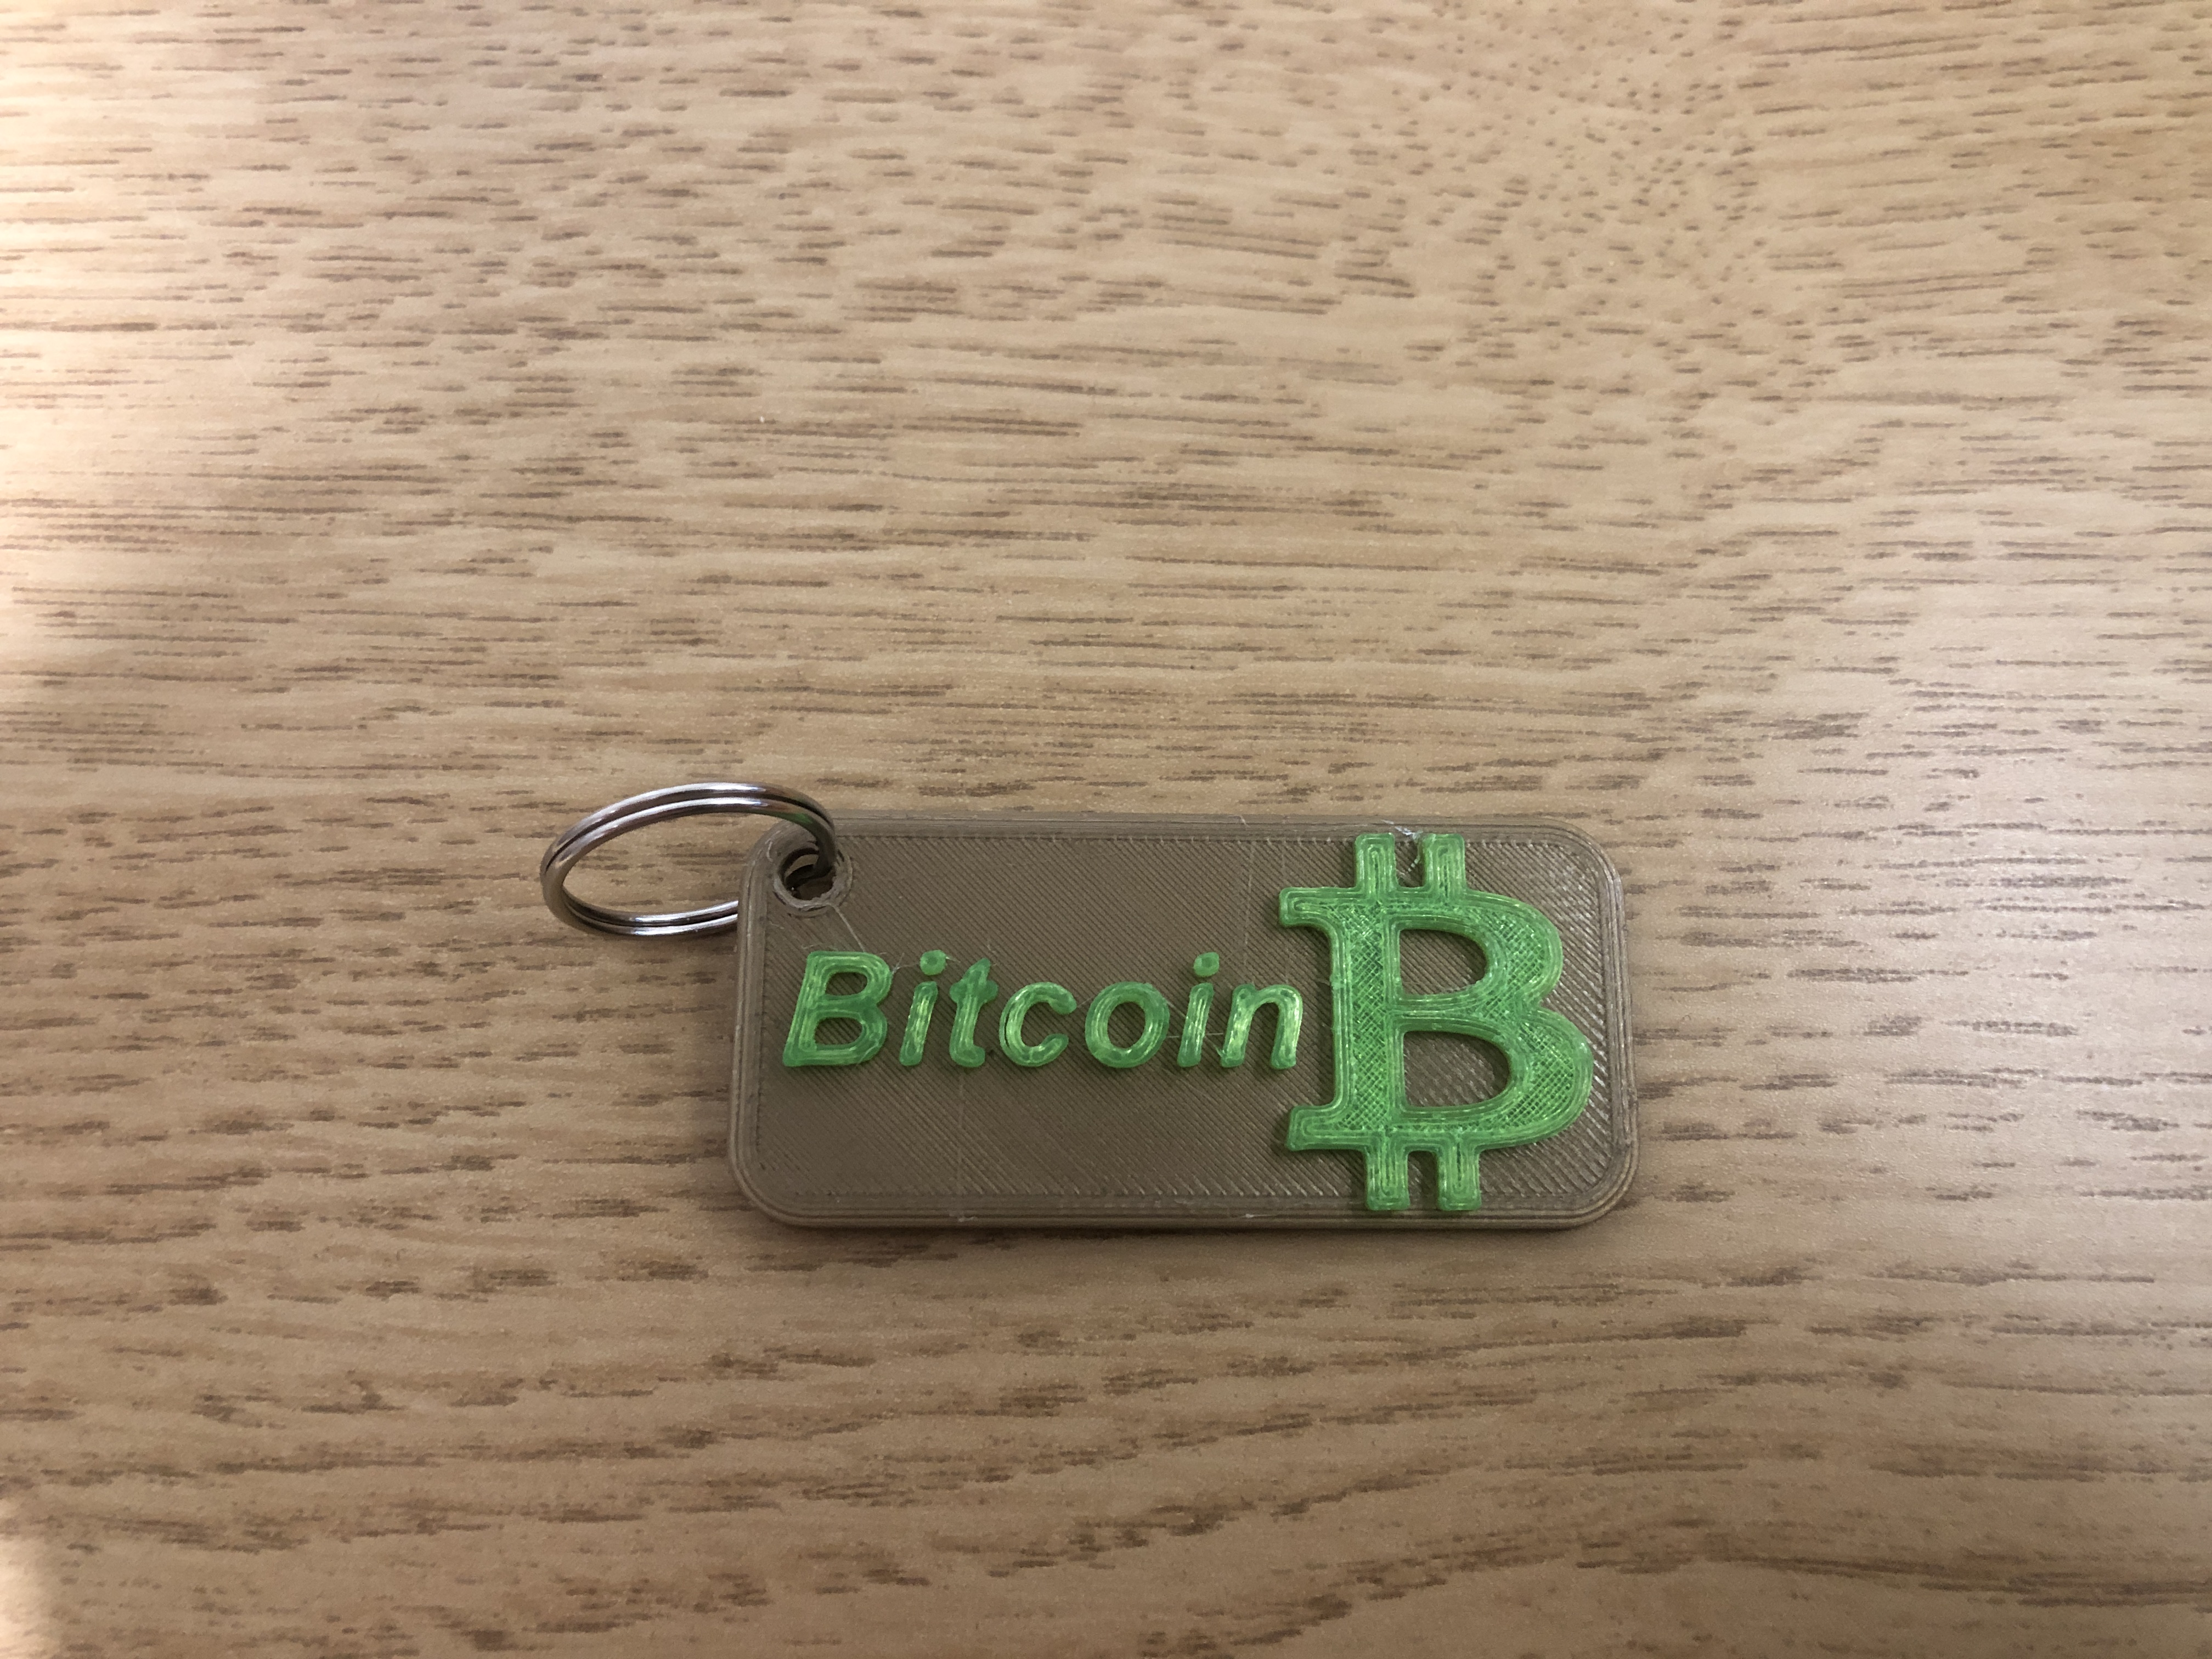 Bitcoin (BTC) Key chain